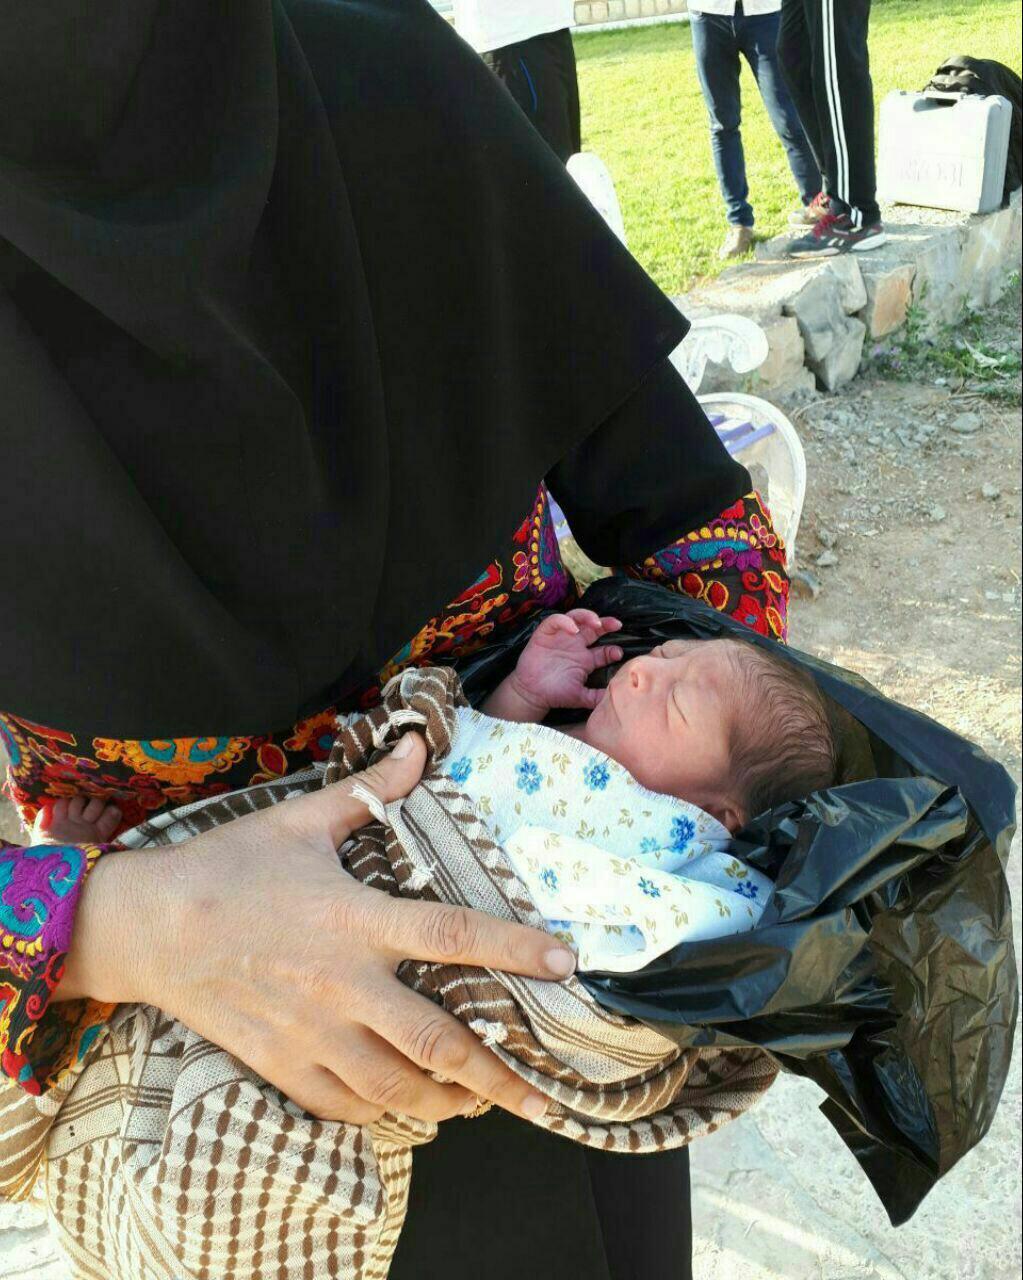 پیدا شدن یک نوزاد در کیسه زباله در کرمانشاه +عکس